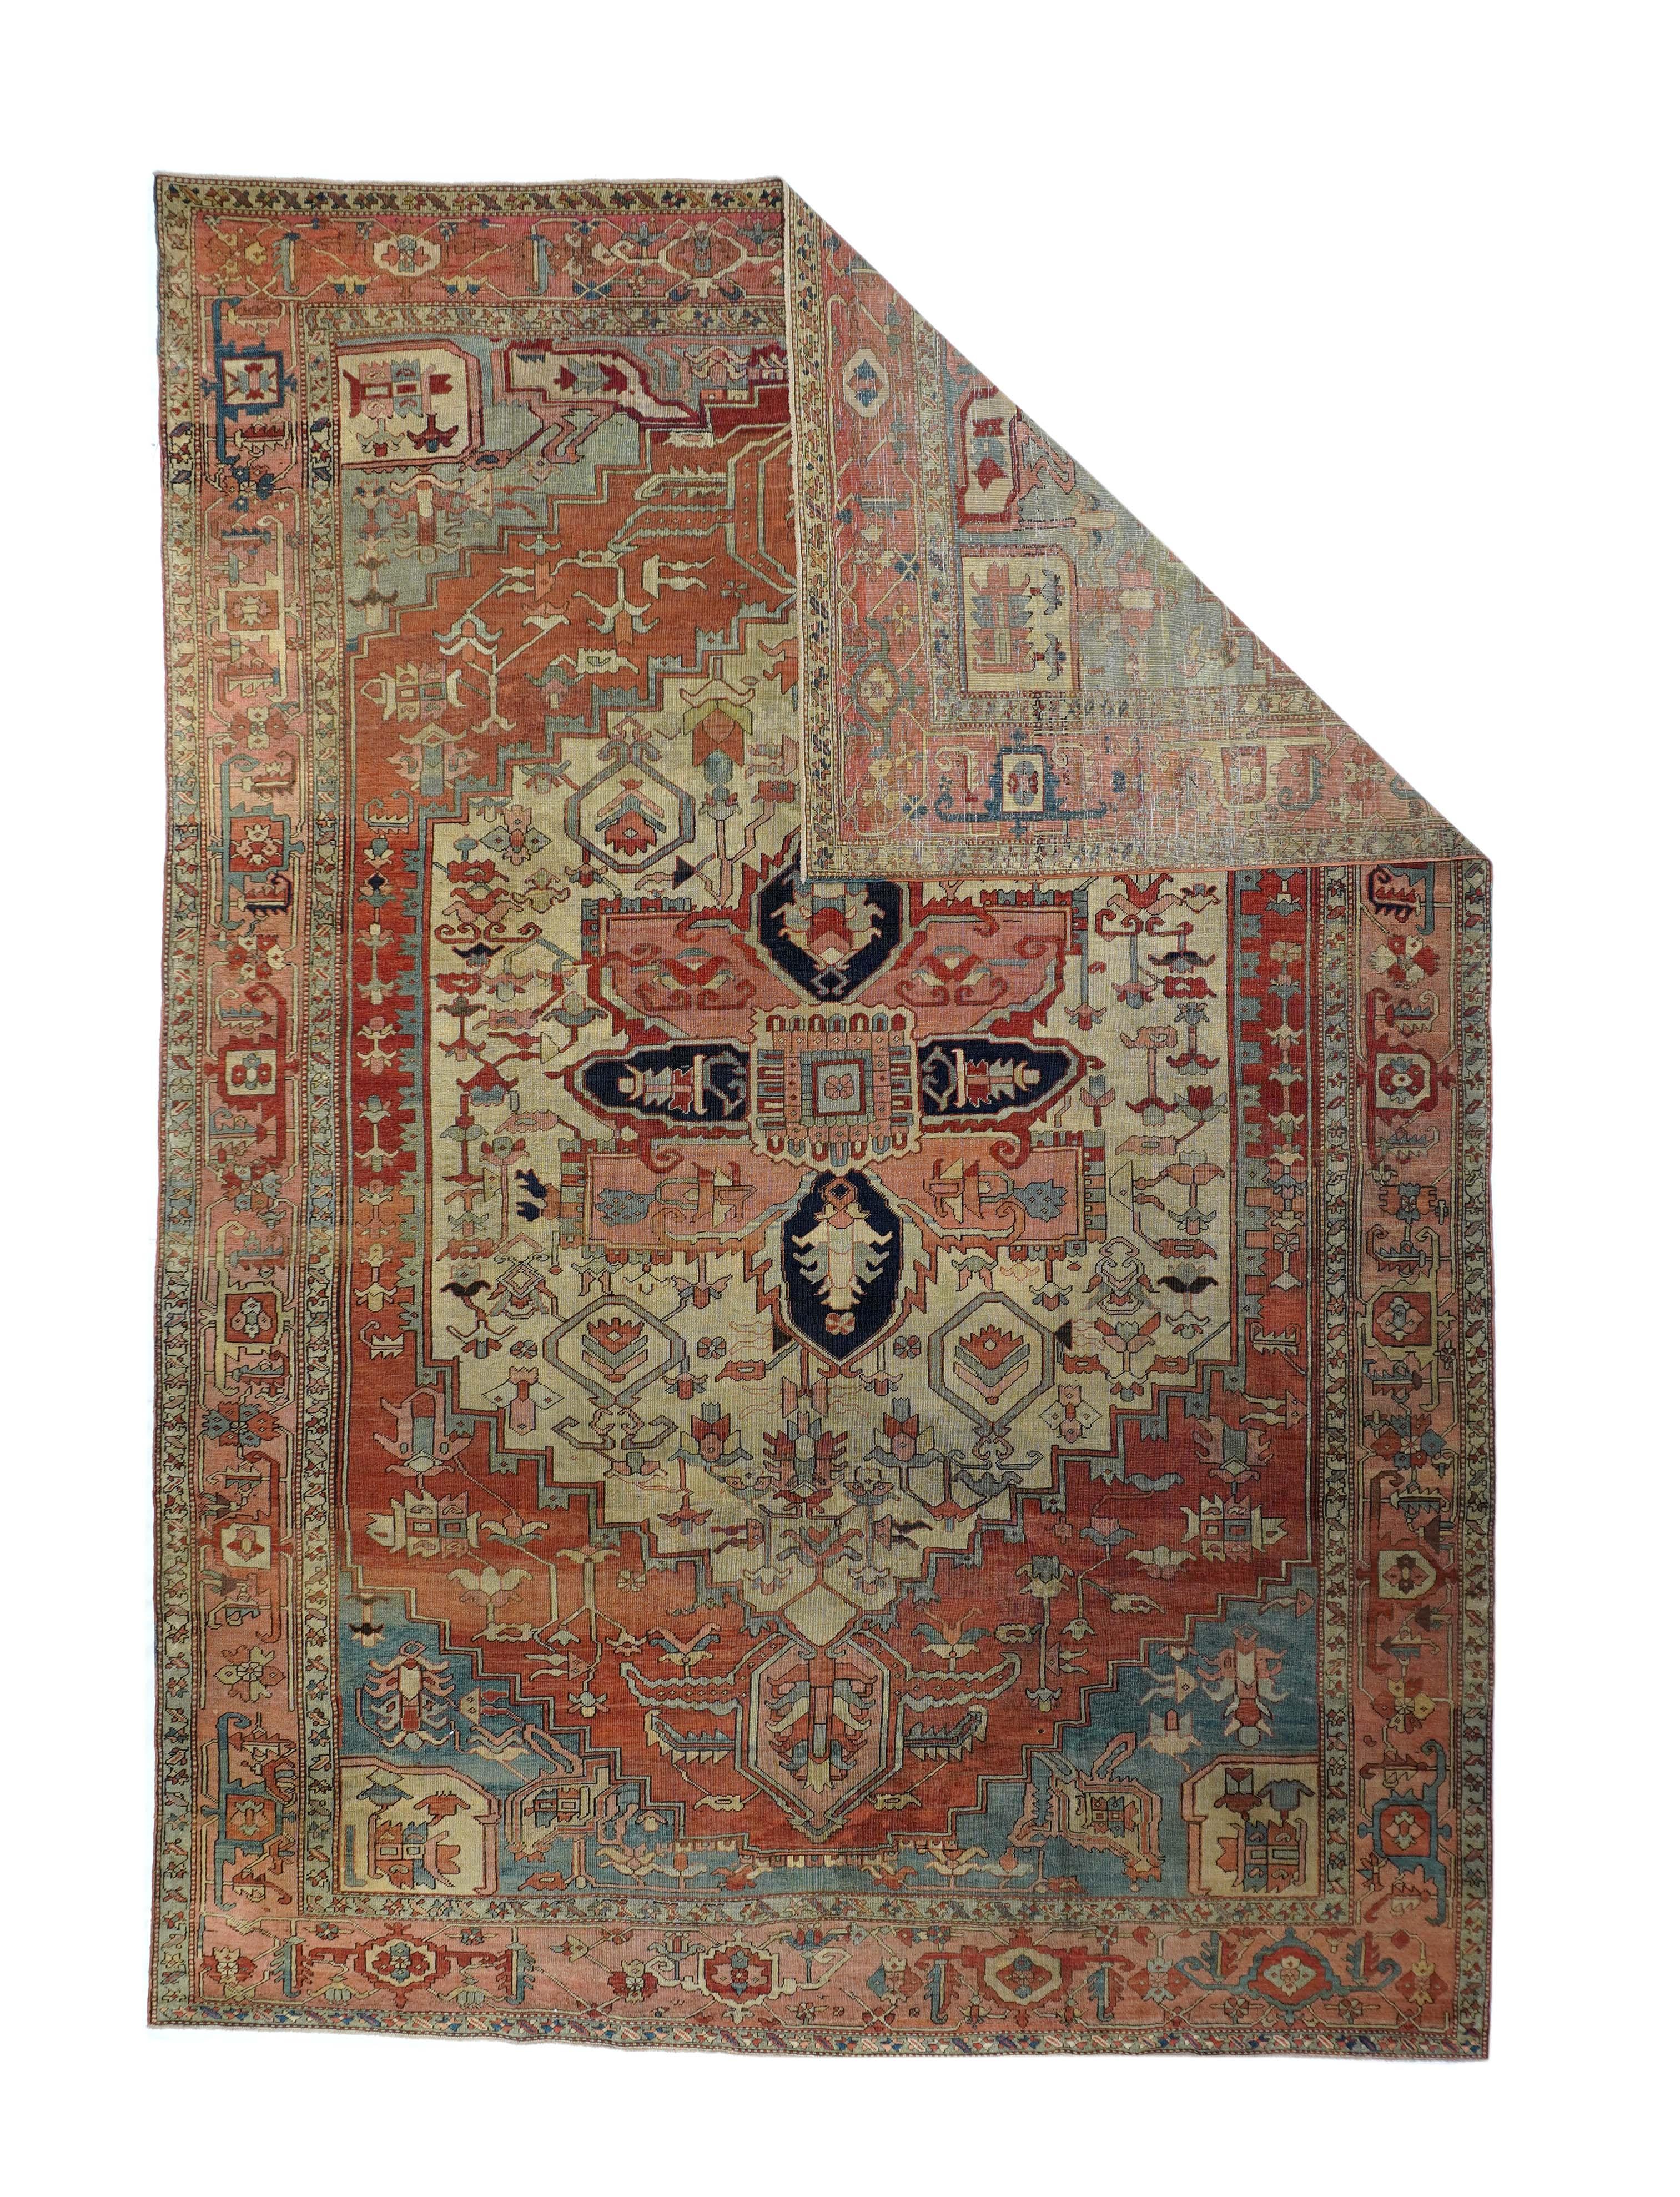 Antique Serapi rug, measures : 8'5'' x 12'.